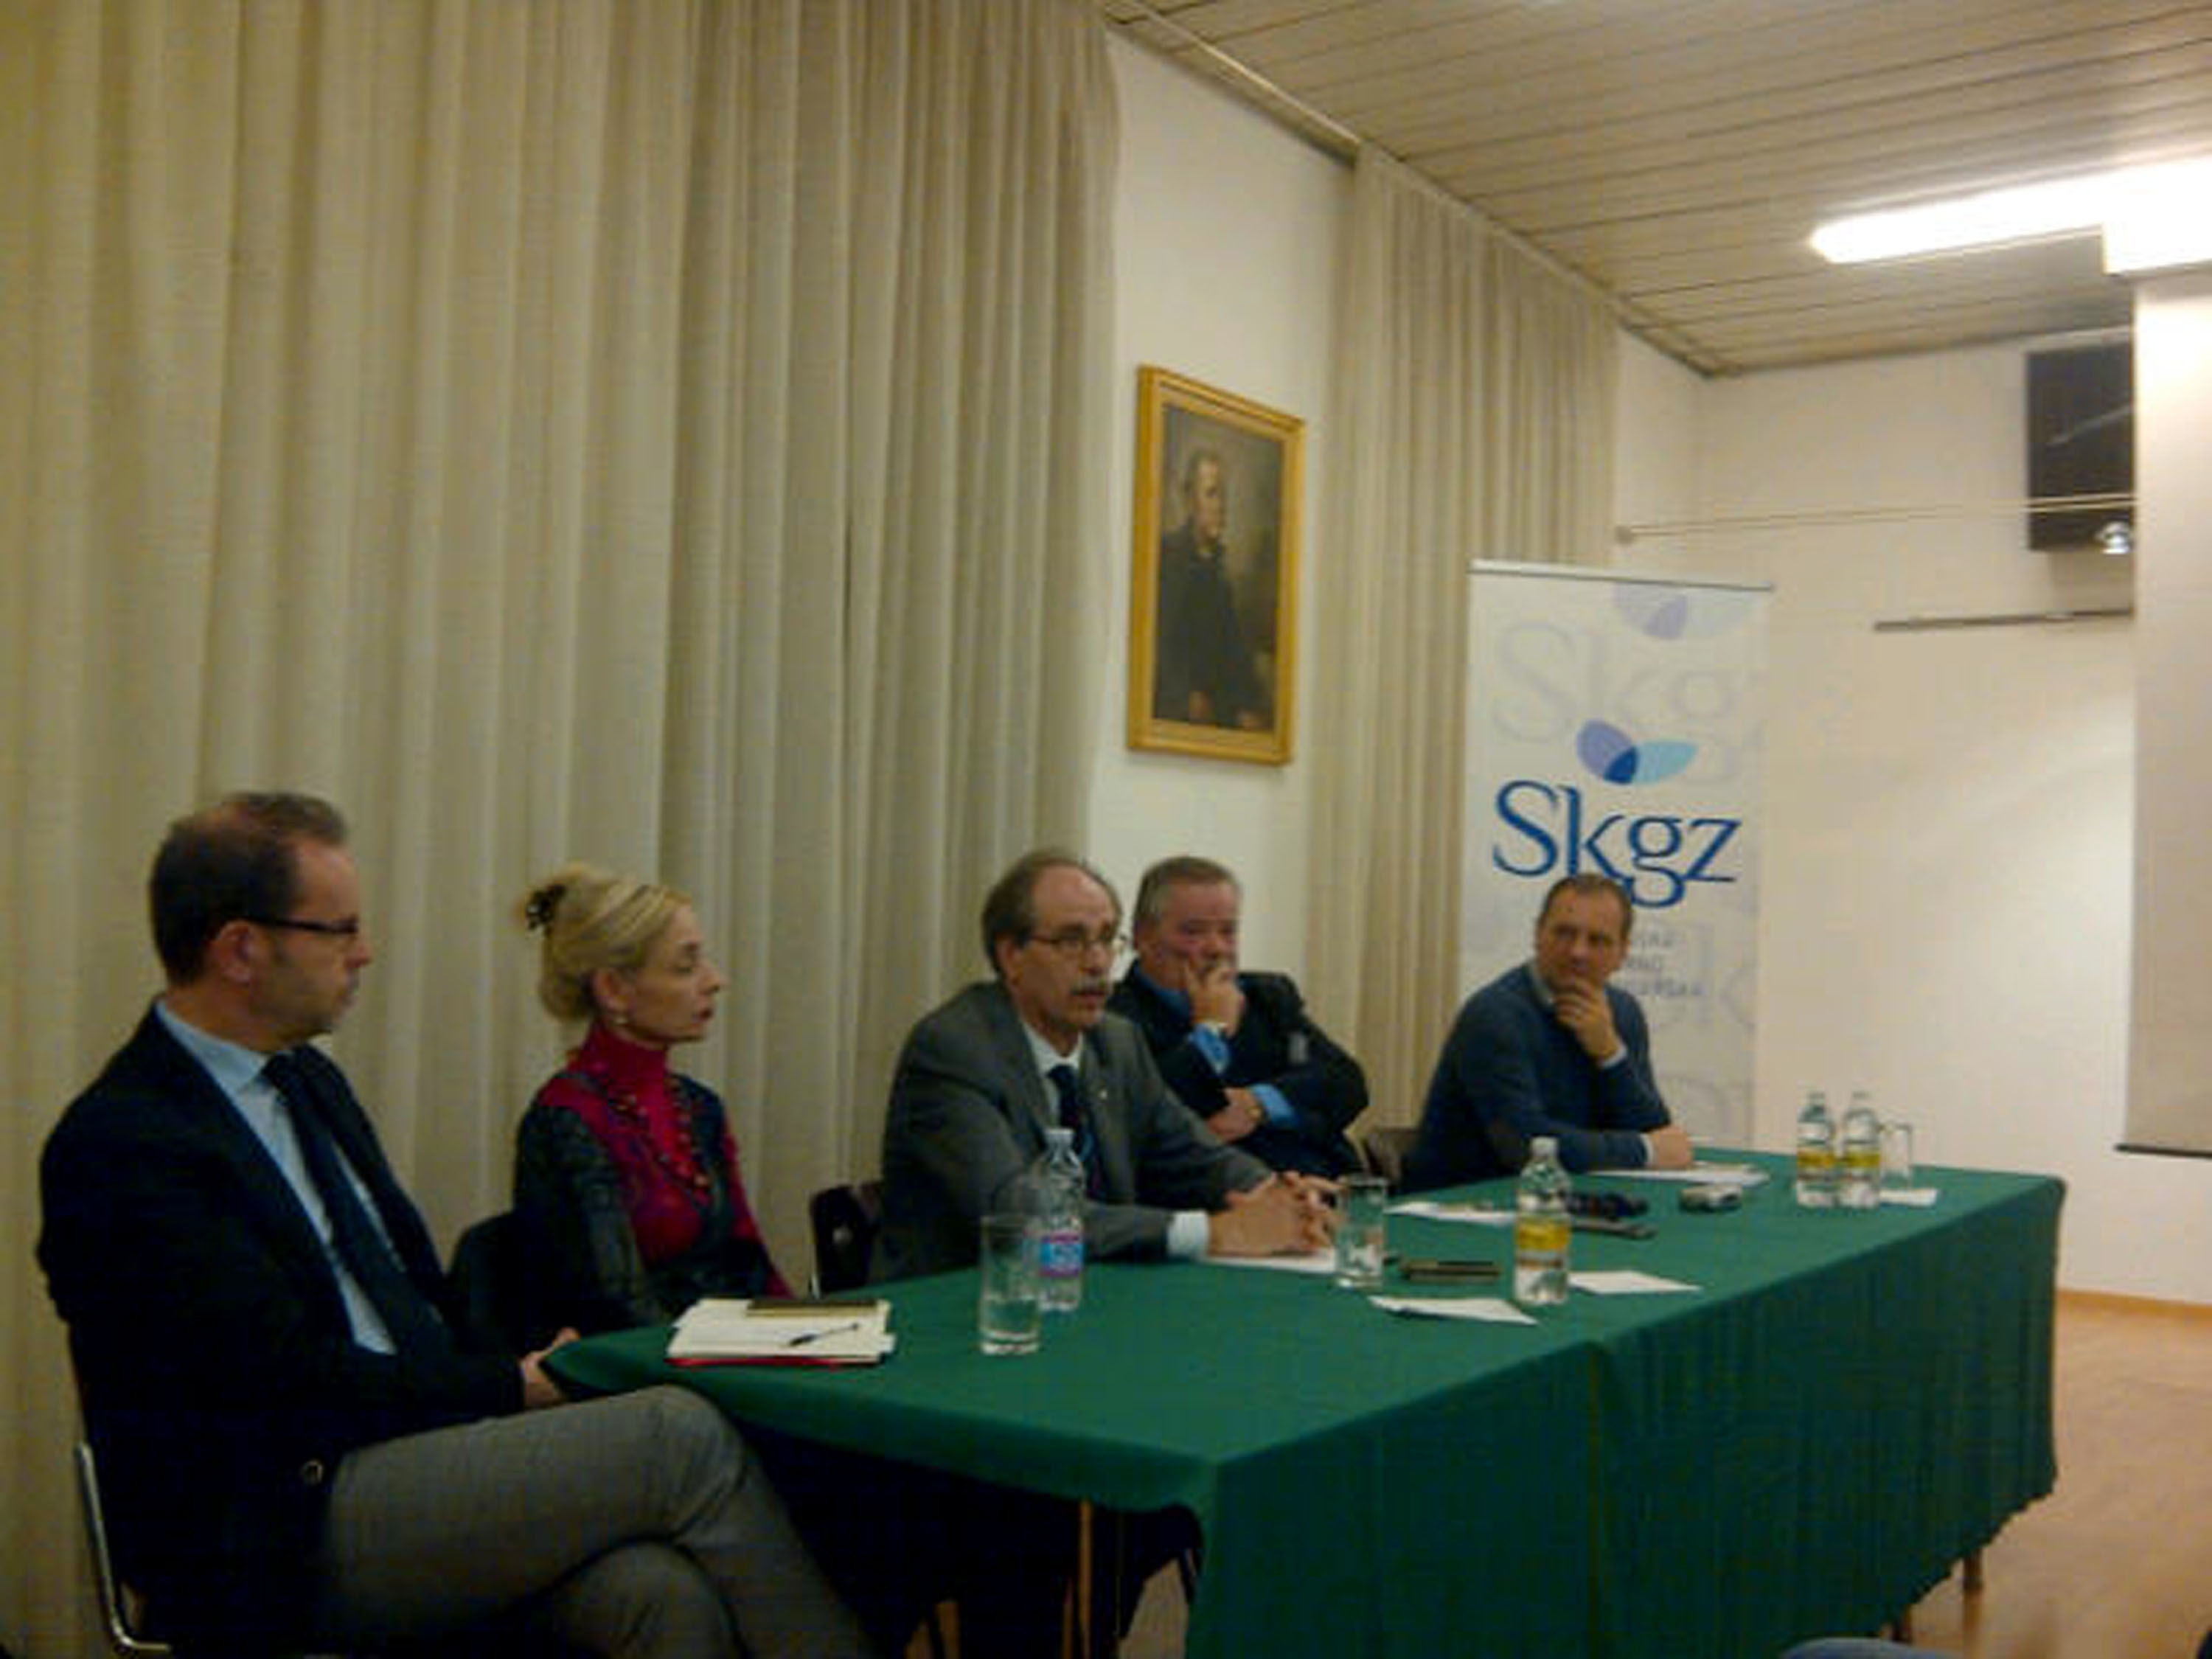 Gianni Torrenti (Assessore regionale Cultura) con il consiglio direttivo regionale della SKGZ (Unione culturale economica slovena) - Trieste 19/12/2013